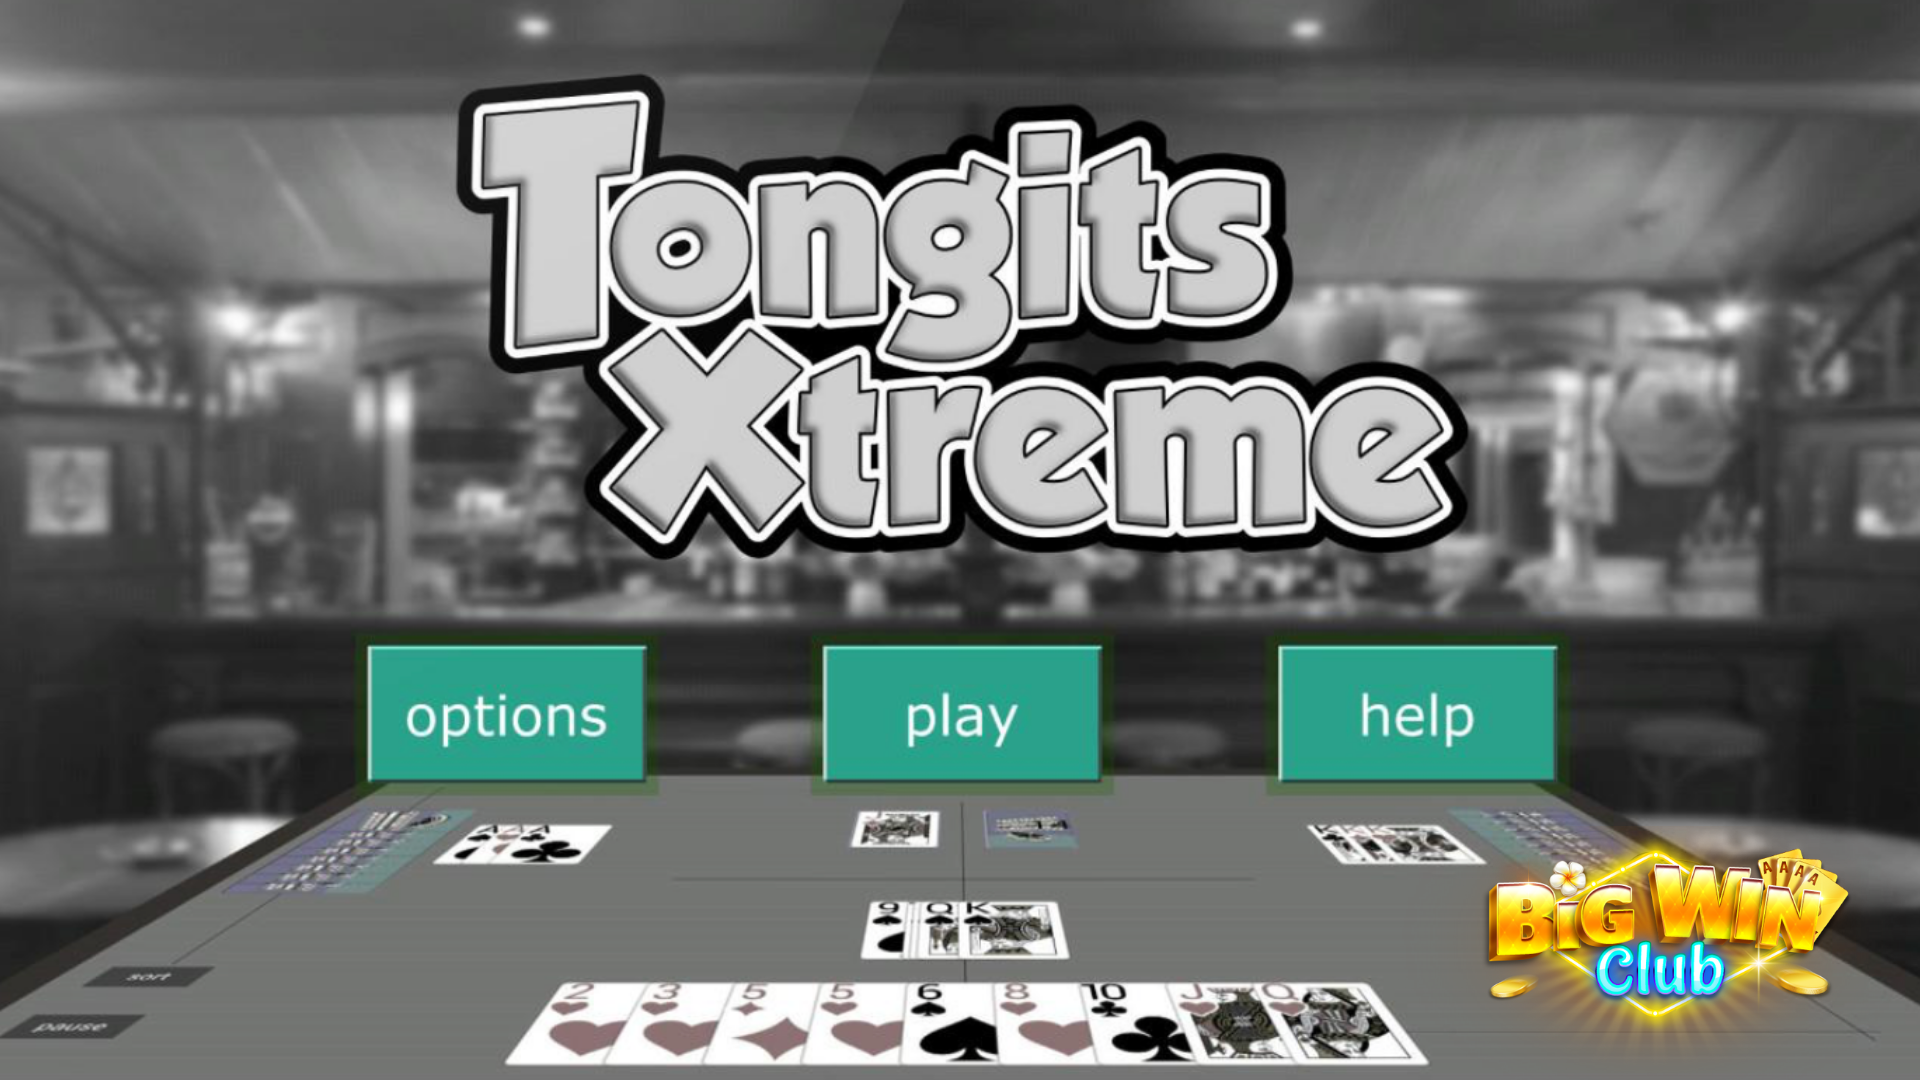 Tongits Extreme sa AI Bots para sa iOS at Android